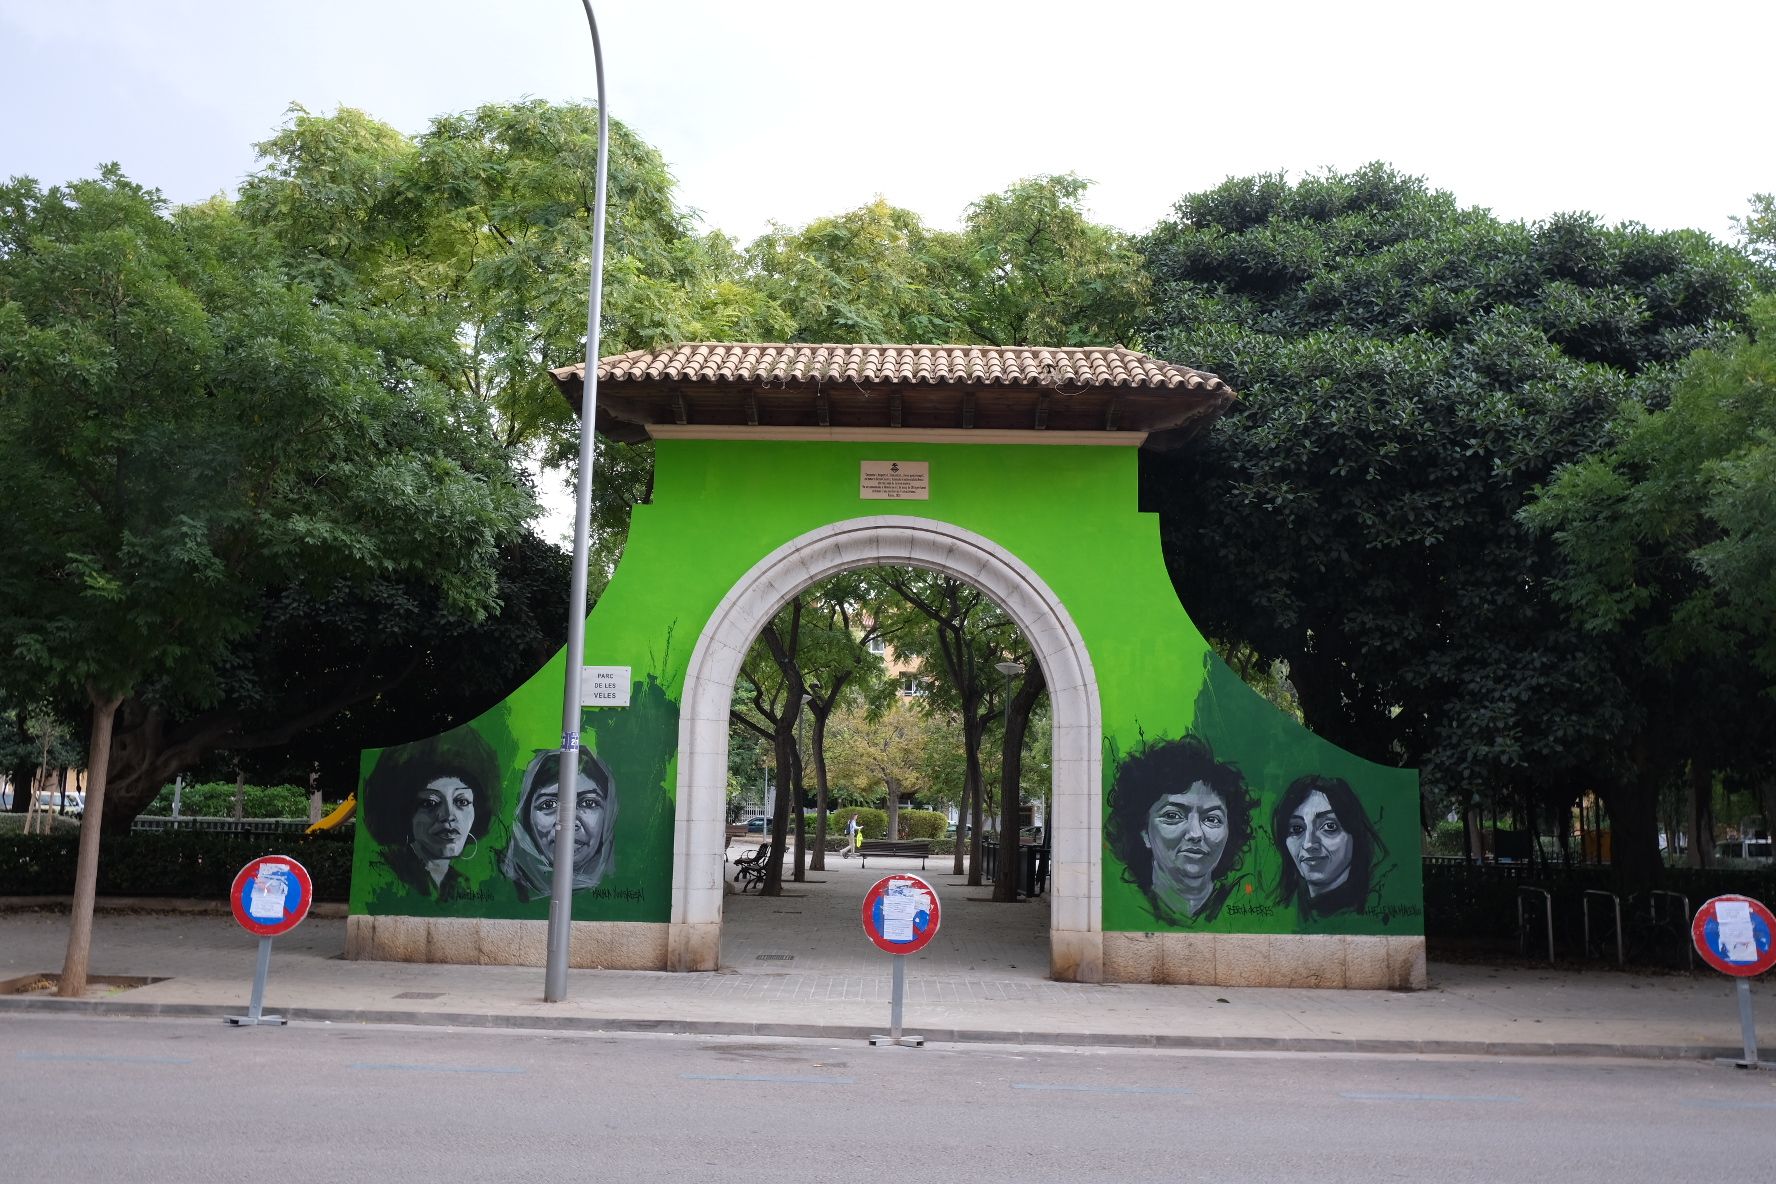 El Ayuntamiento de Palma permite que un mural transforme la histórica puerta del Parc de Ses Veles